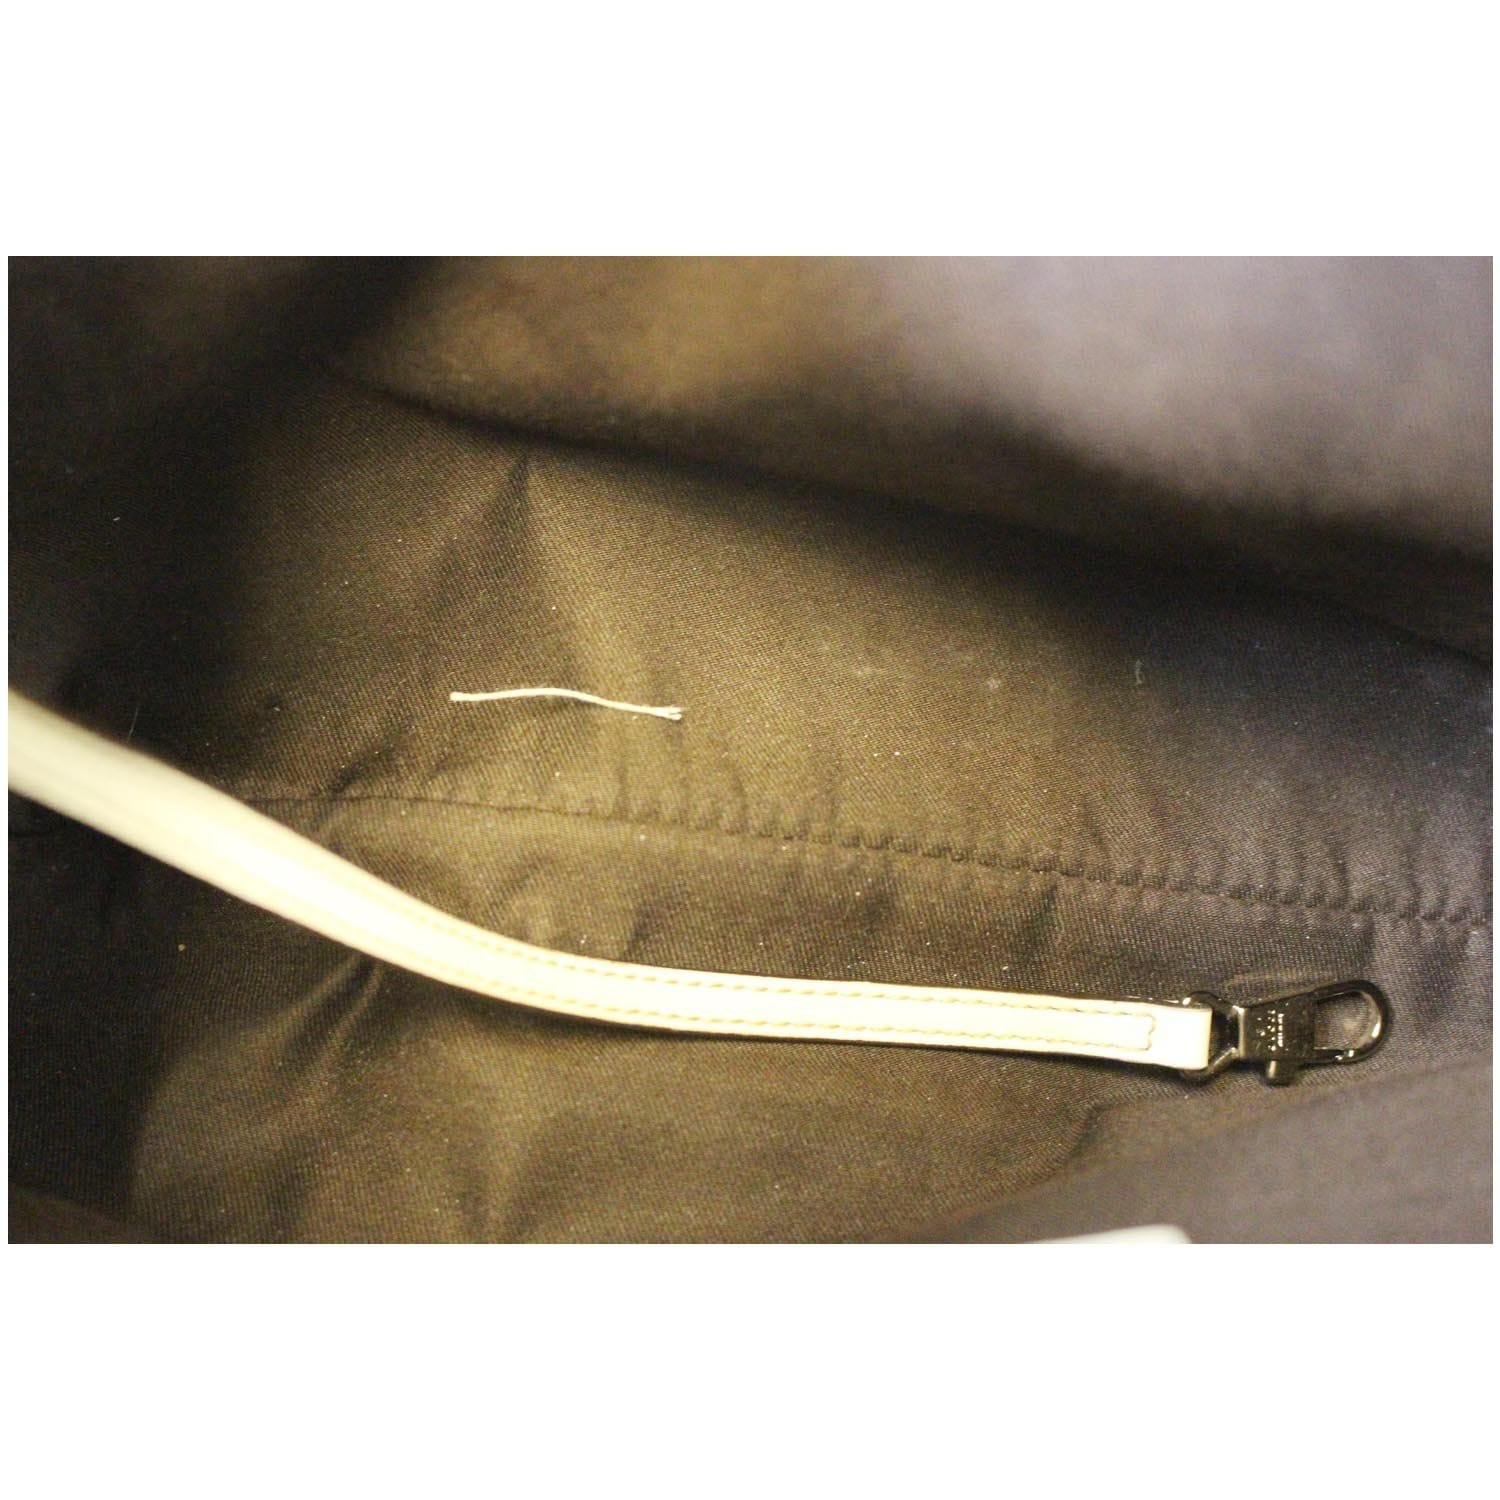 GUCCI #42900 Horsebit White Leather Hobo Handbag – ALL YOUR BLISS